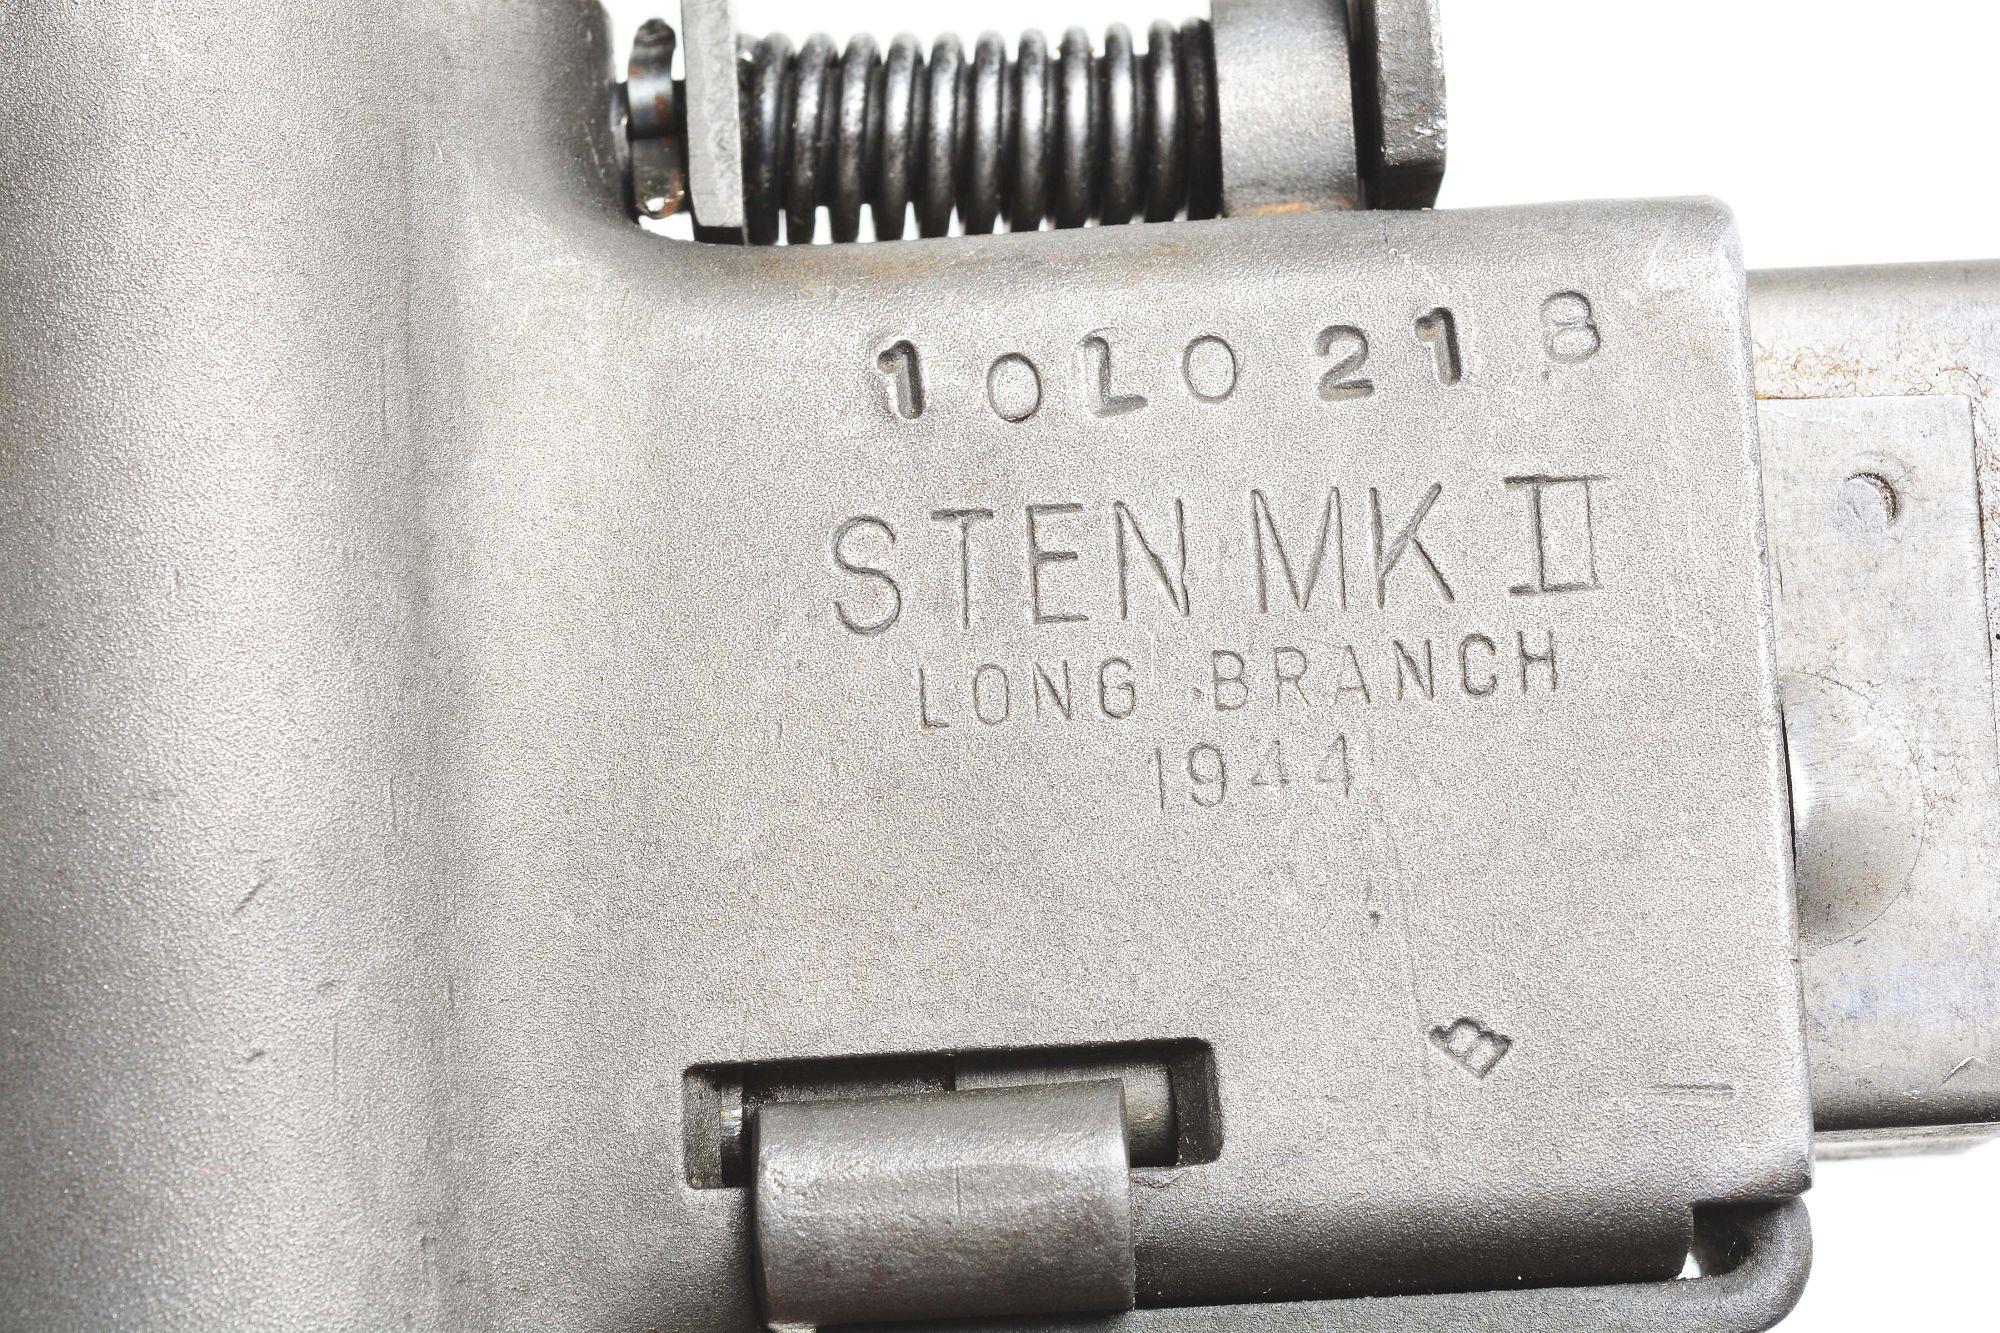 (N) DLO REGISTERED WORLD WAR II BRITISH STEN MK II MACHINE GUN WITH SPARE STEN MK II PARTS KIT (FULL